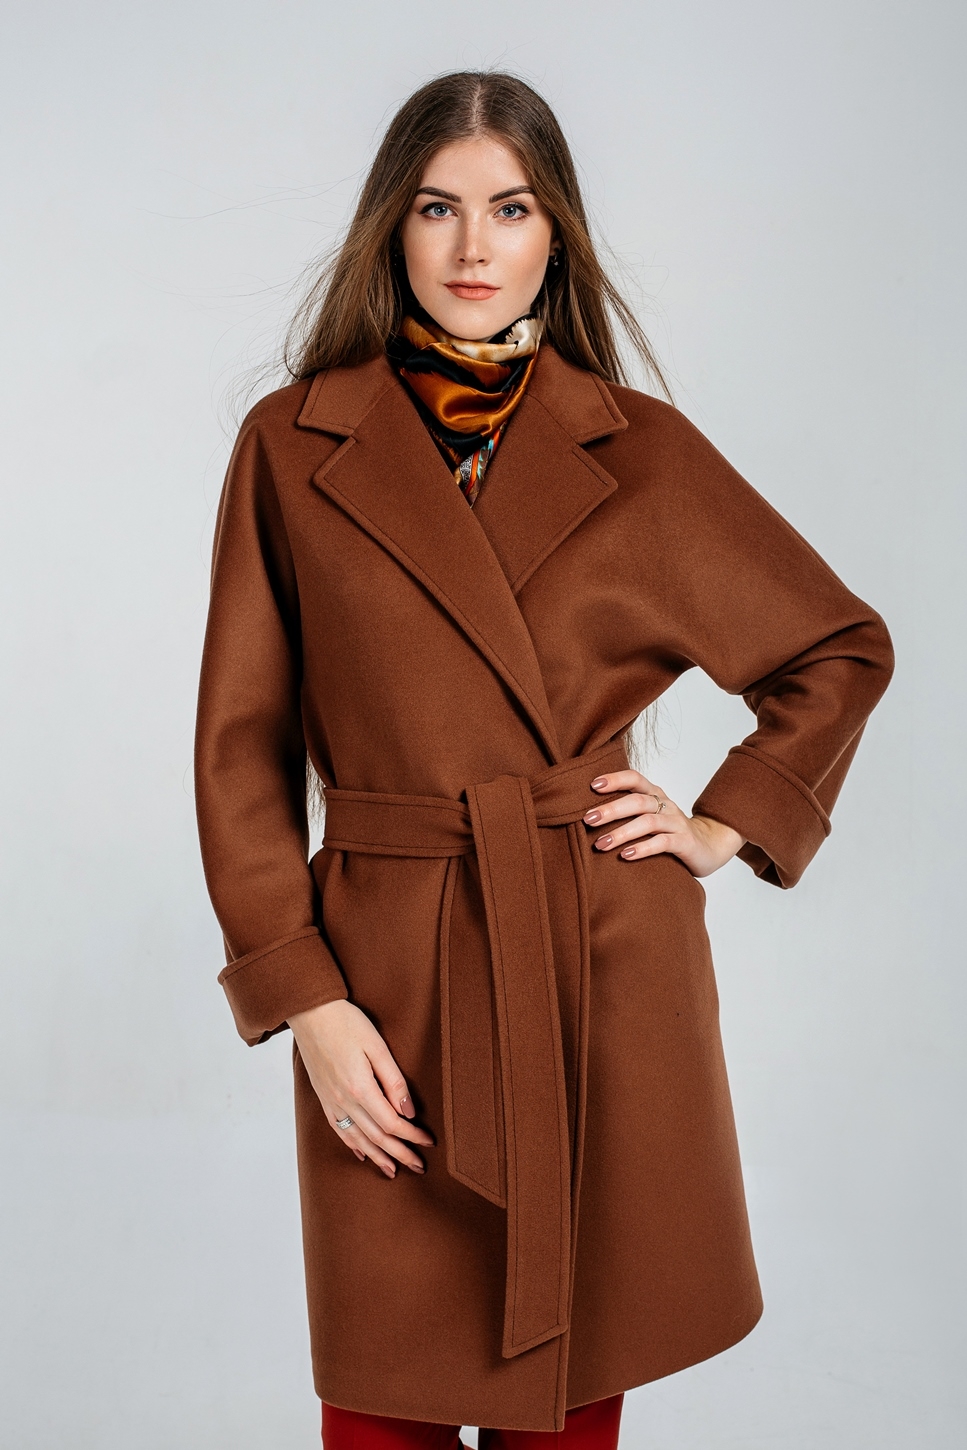 Купить коричневое пальто. Коричневое пальто Бифри. Коричневое пальто женское. Пальто коричневого цвета. Пальто женское зимнее коричневое.